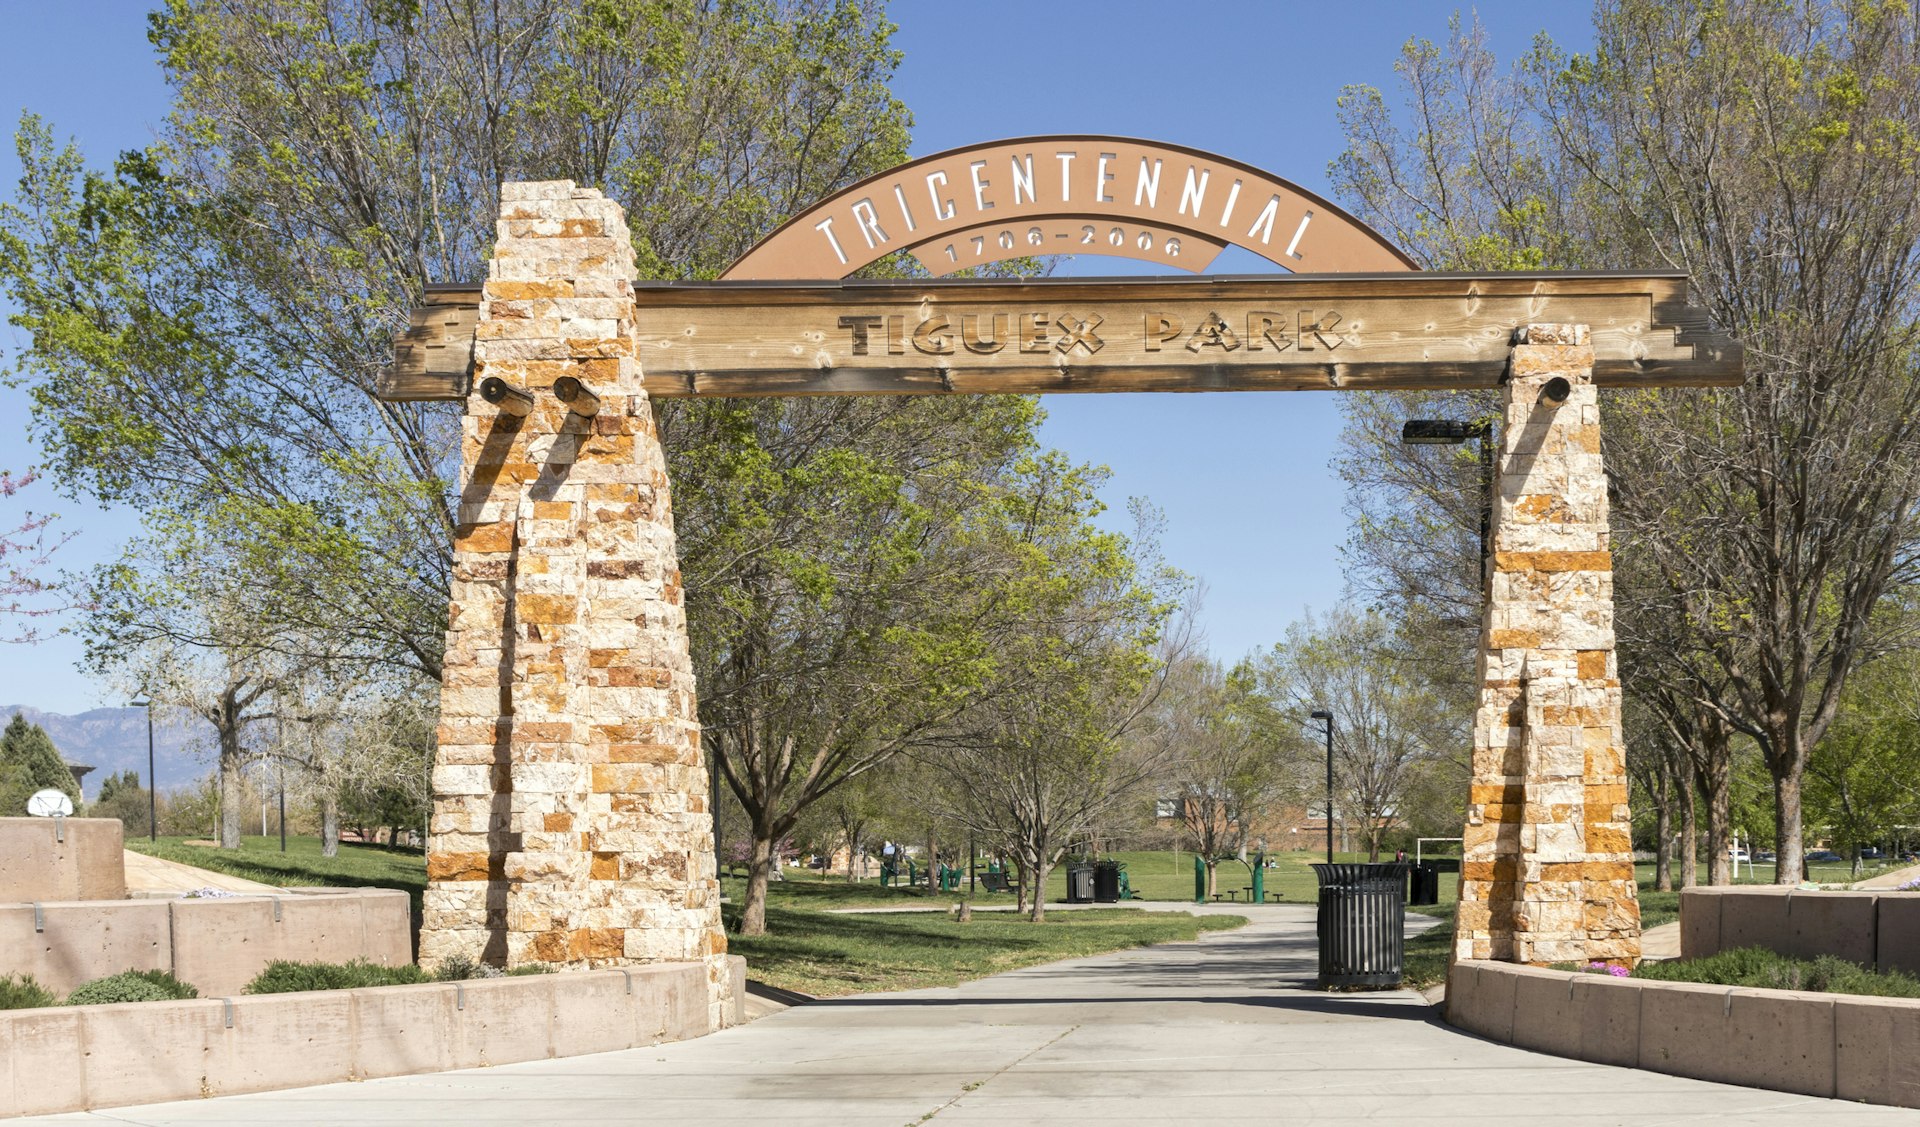 A stone gateway to a city park